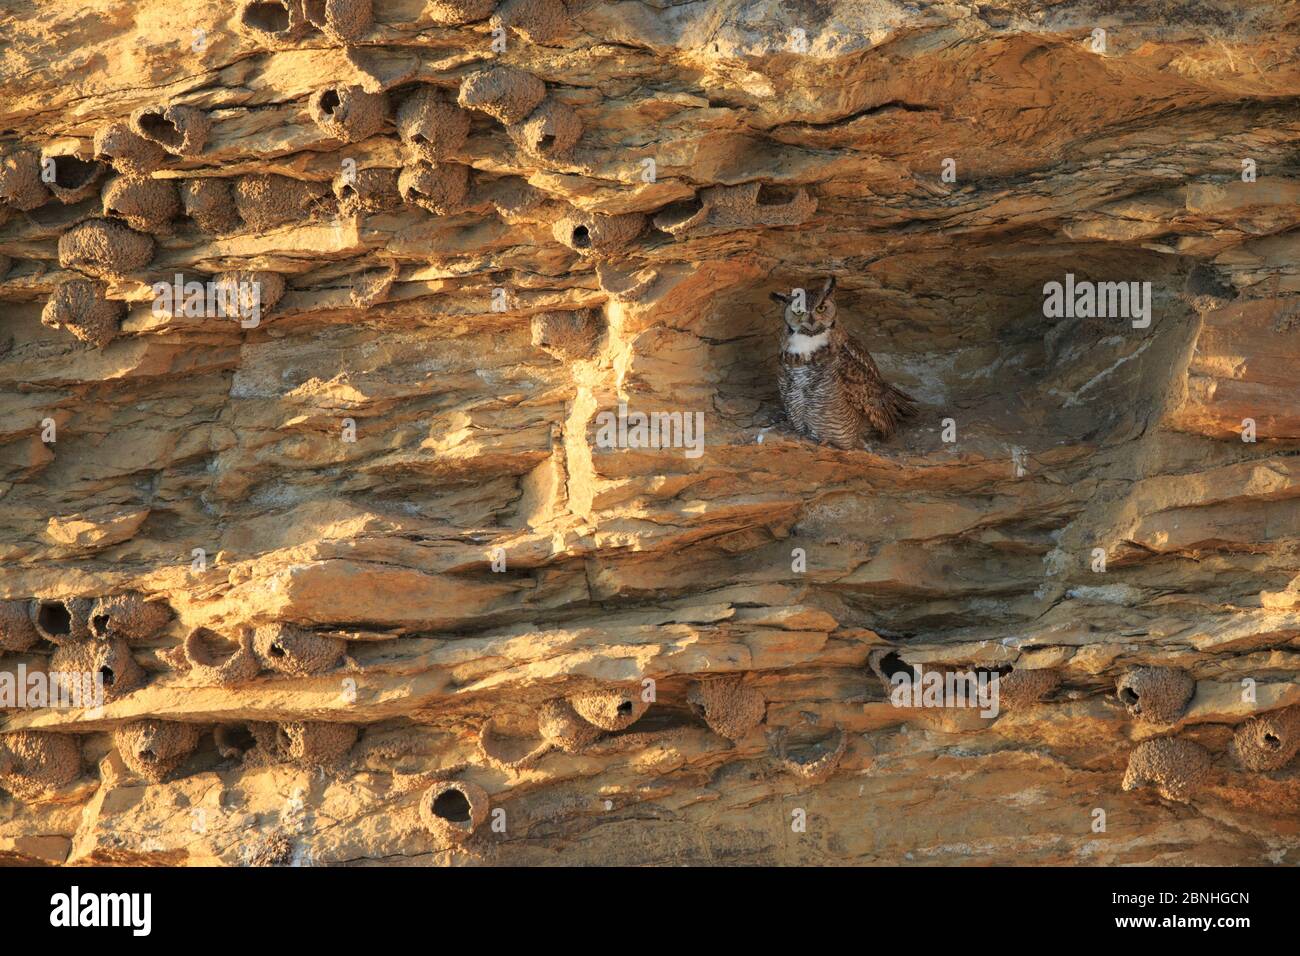 Große Hornkauz (Bubo virginianus) Erwachsene weibliche Roosting in einer Klippe bedeckt mit Cliff Swallow Nester (Petrochelidon pyrrhonata) Sublette County, Wyomin Stockfoto